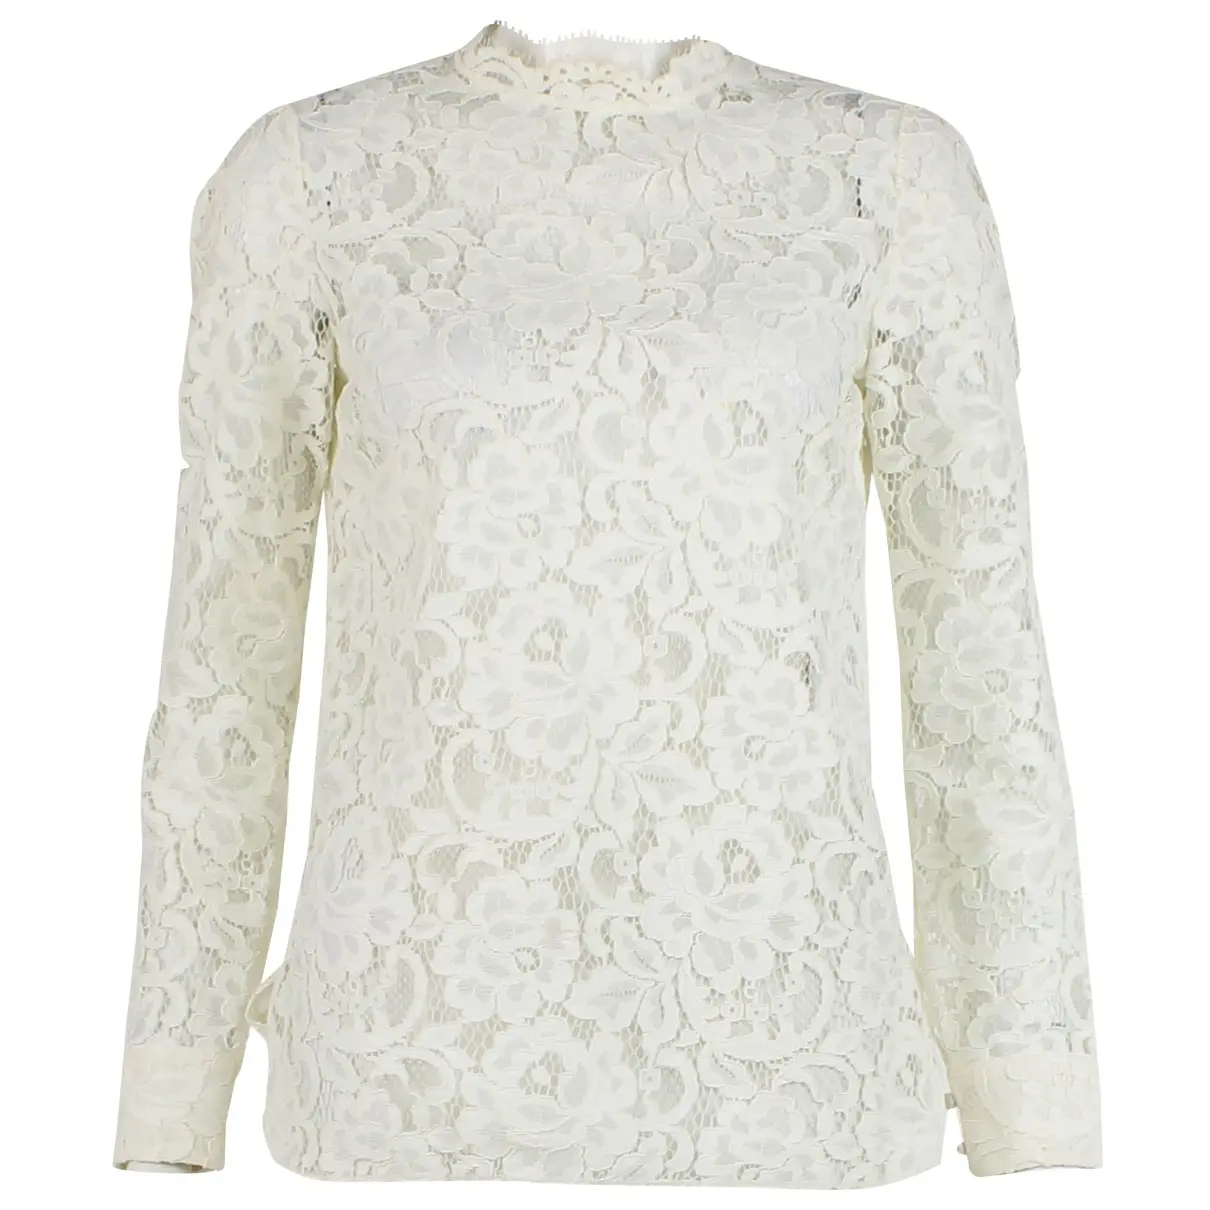 Lace blouse Saint Laurent